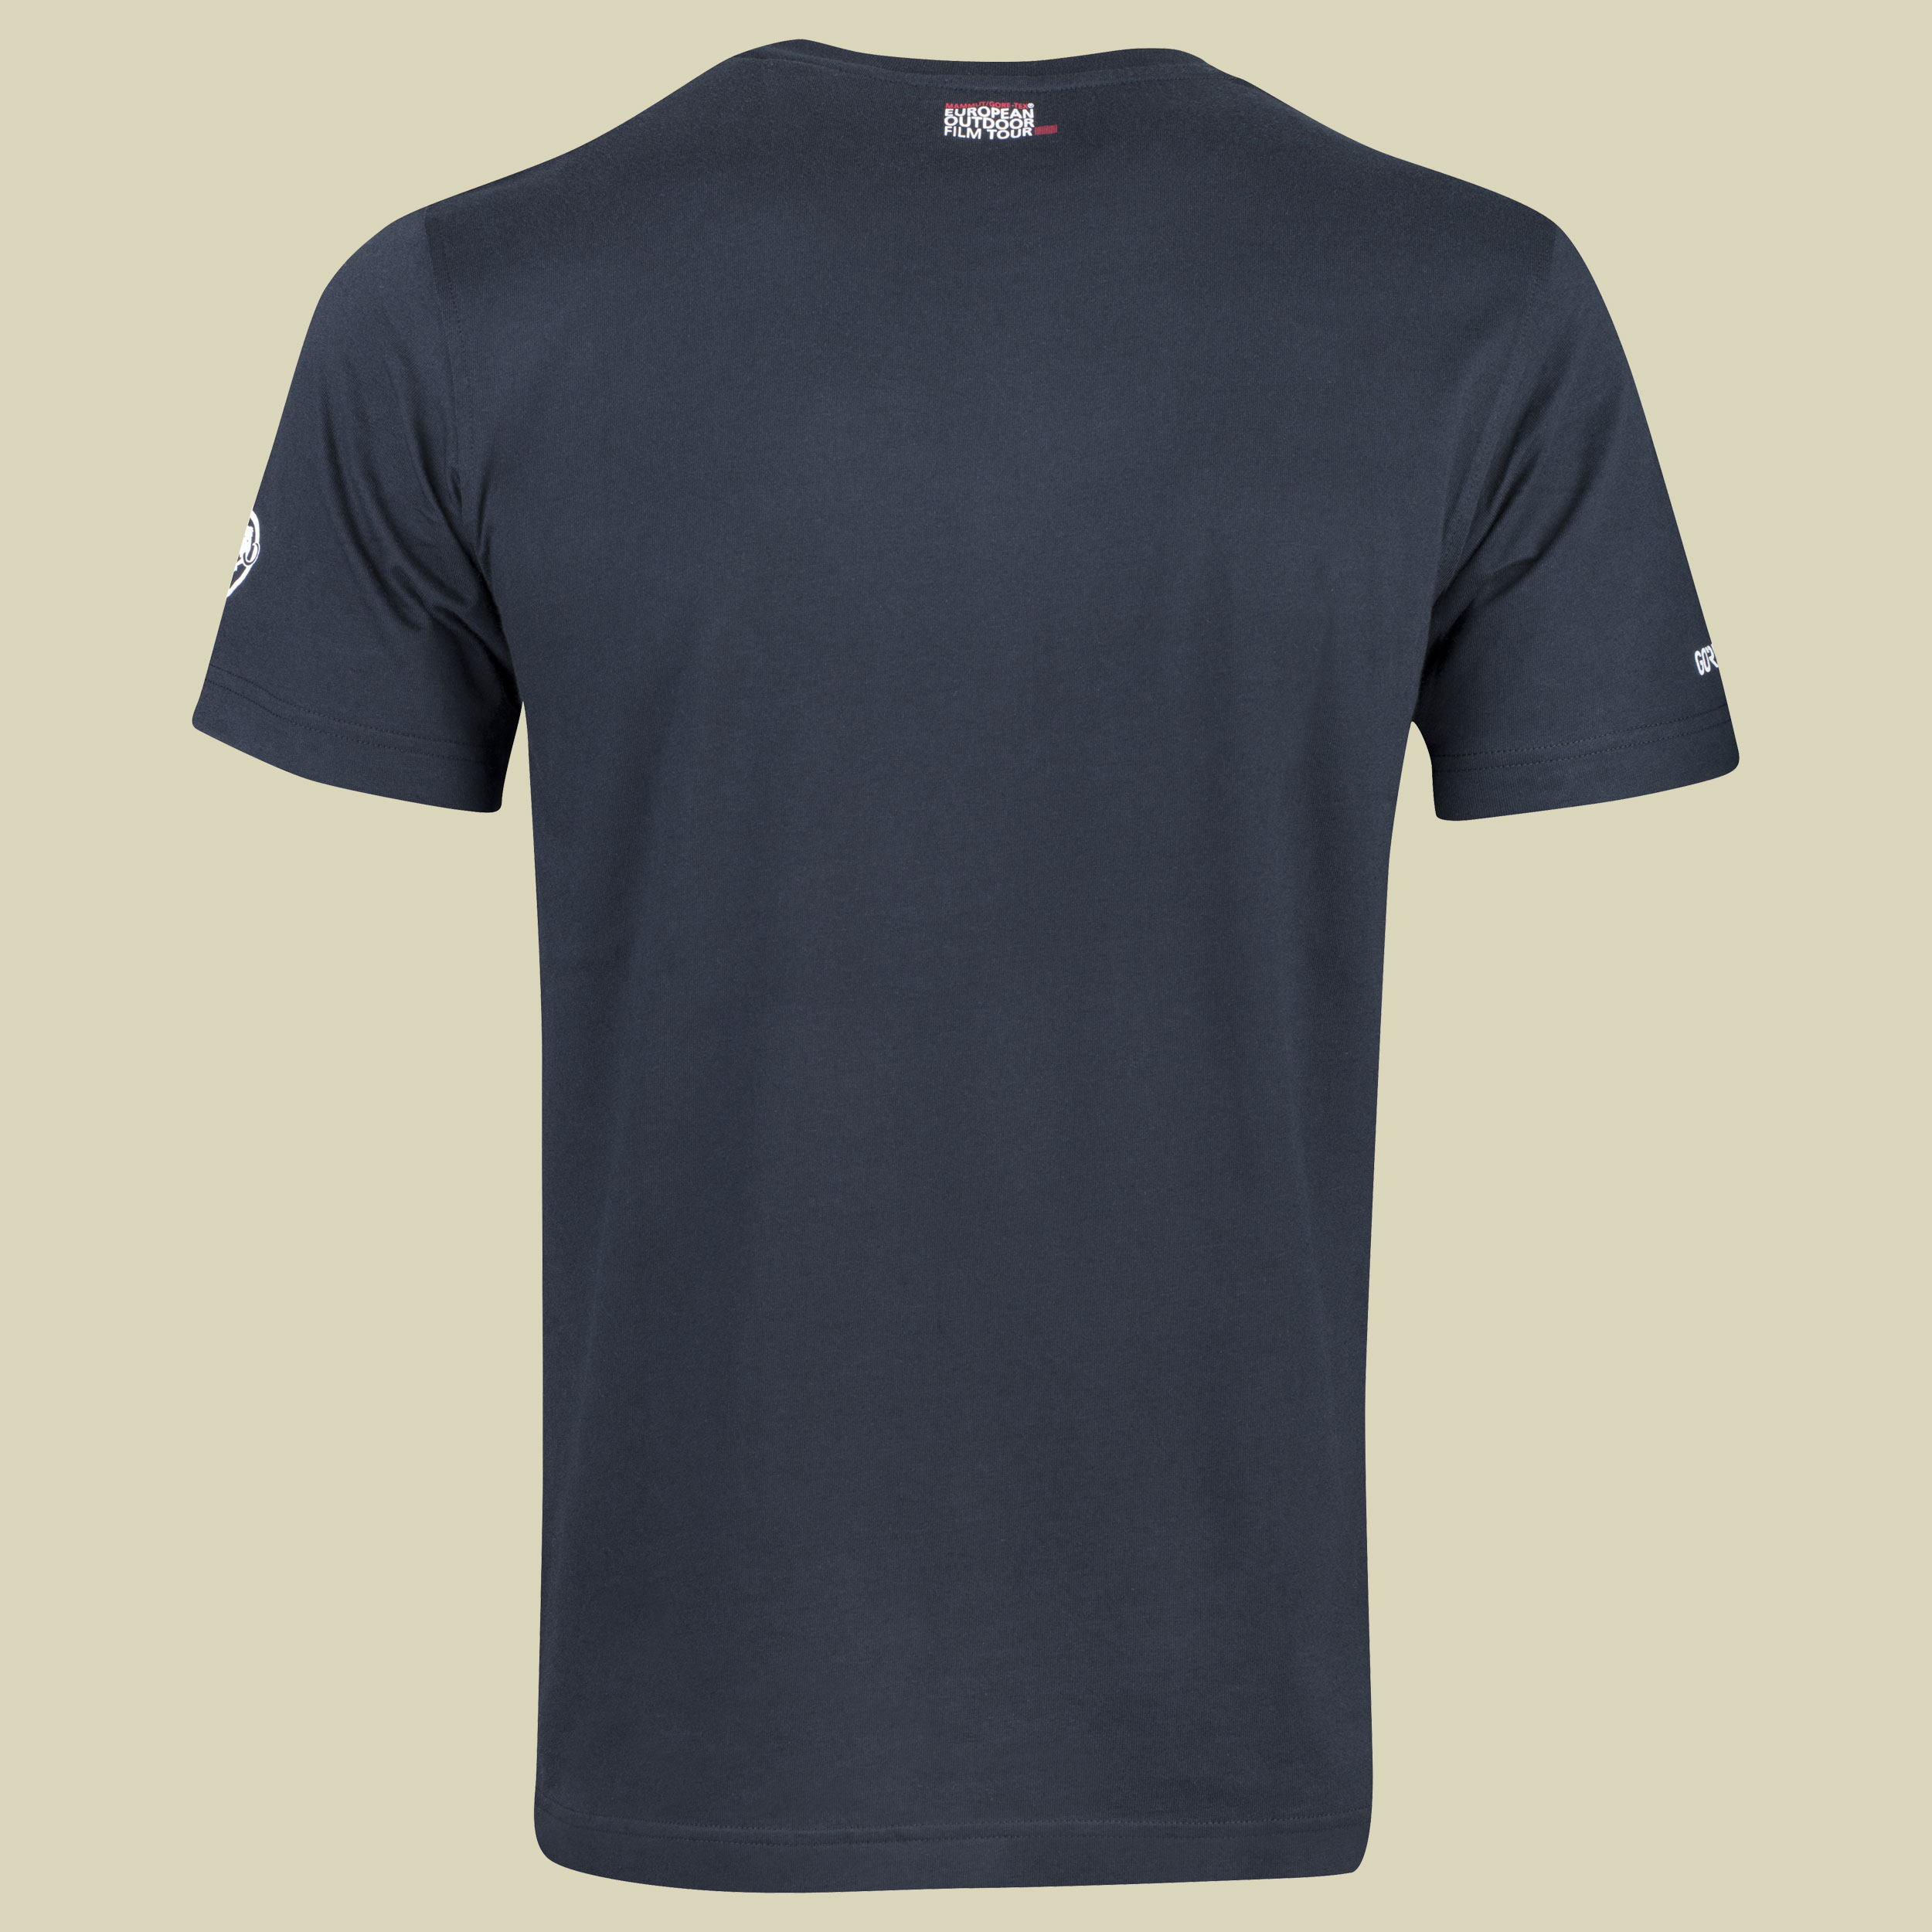 EOFT T-Shirt Men 2018/19 Größe L Farbe black